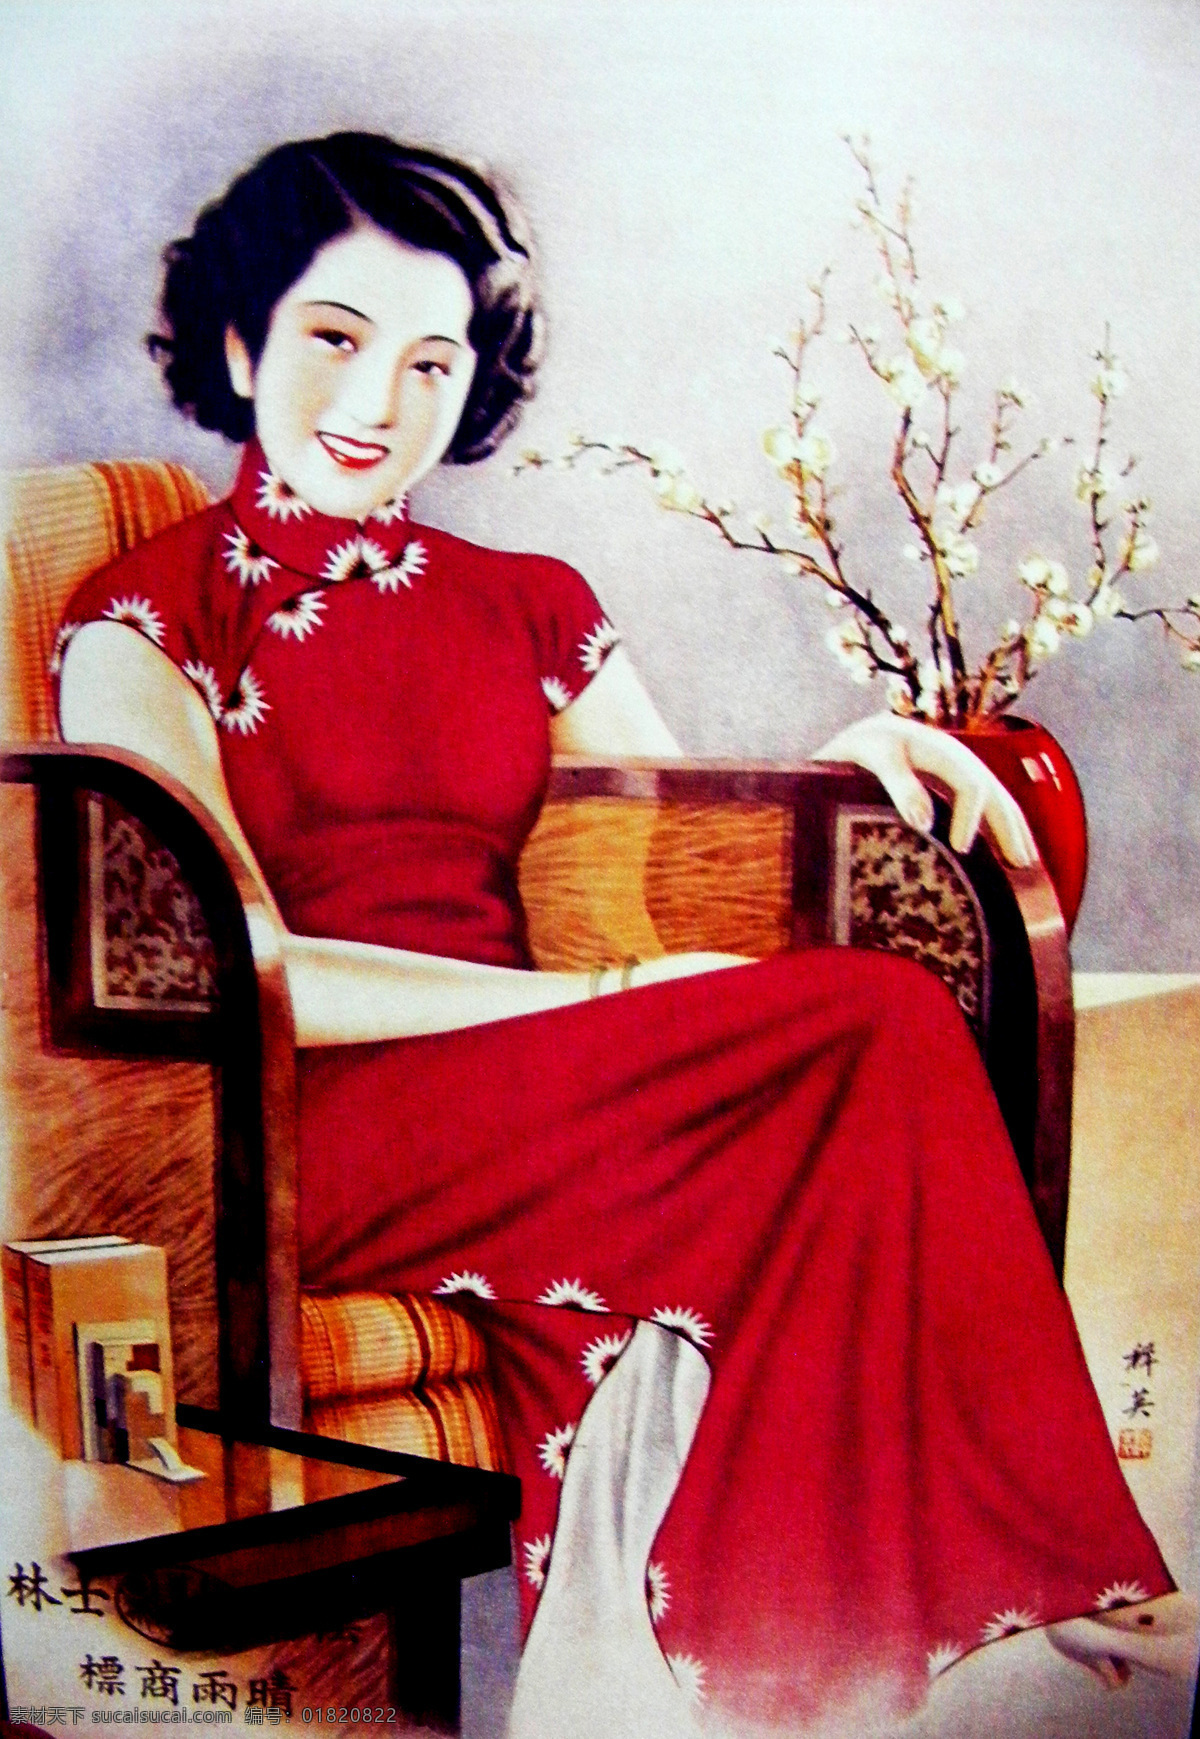 老上海月份牌 老上海 月份牌 美女 旗袍 旗袍美女 文化艺术 民国时期 广告 传统文化 摄影图库